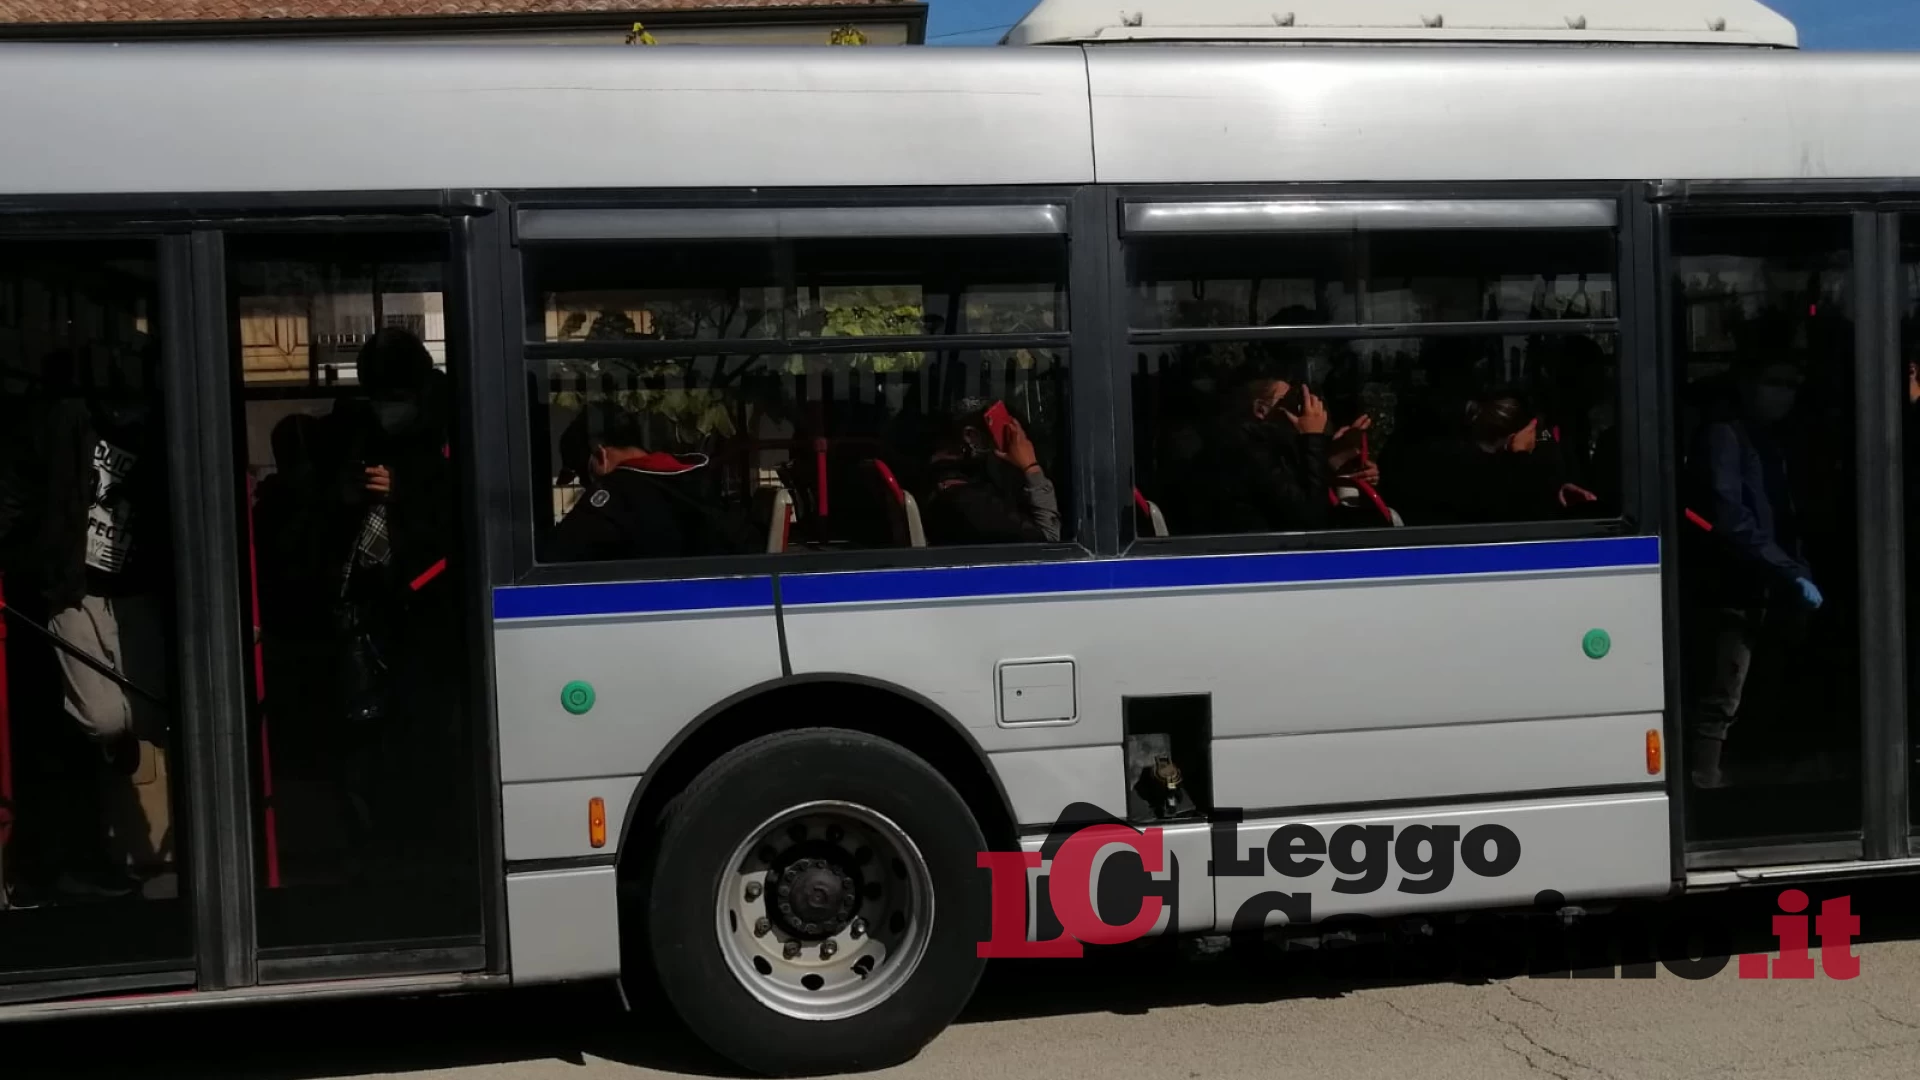 "I bus scolastici viaggiano secondo le norme, non ci sono assembramenti"